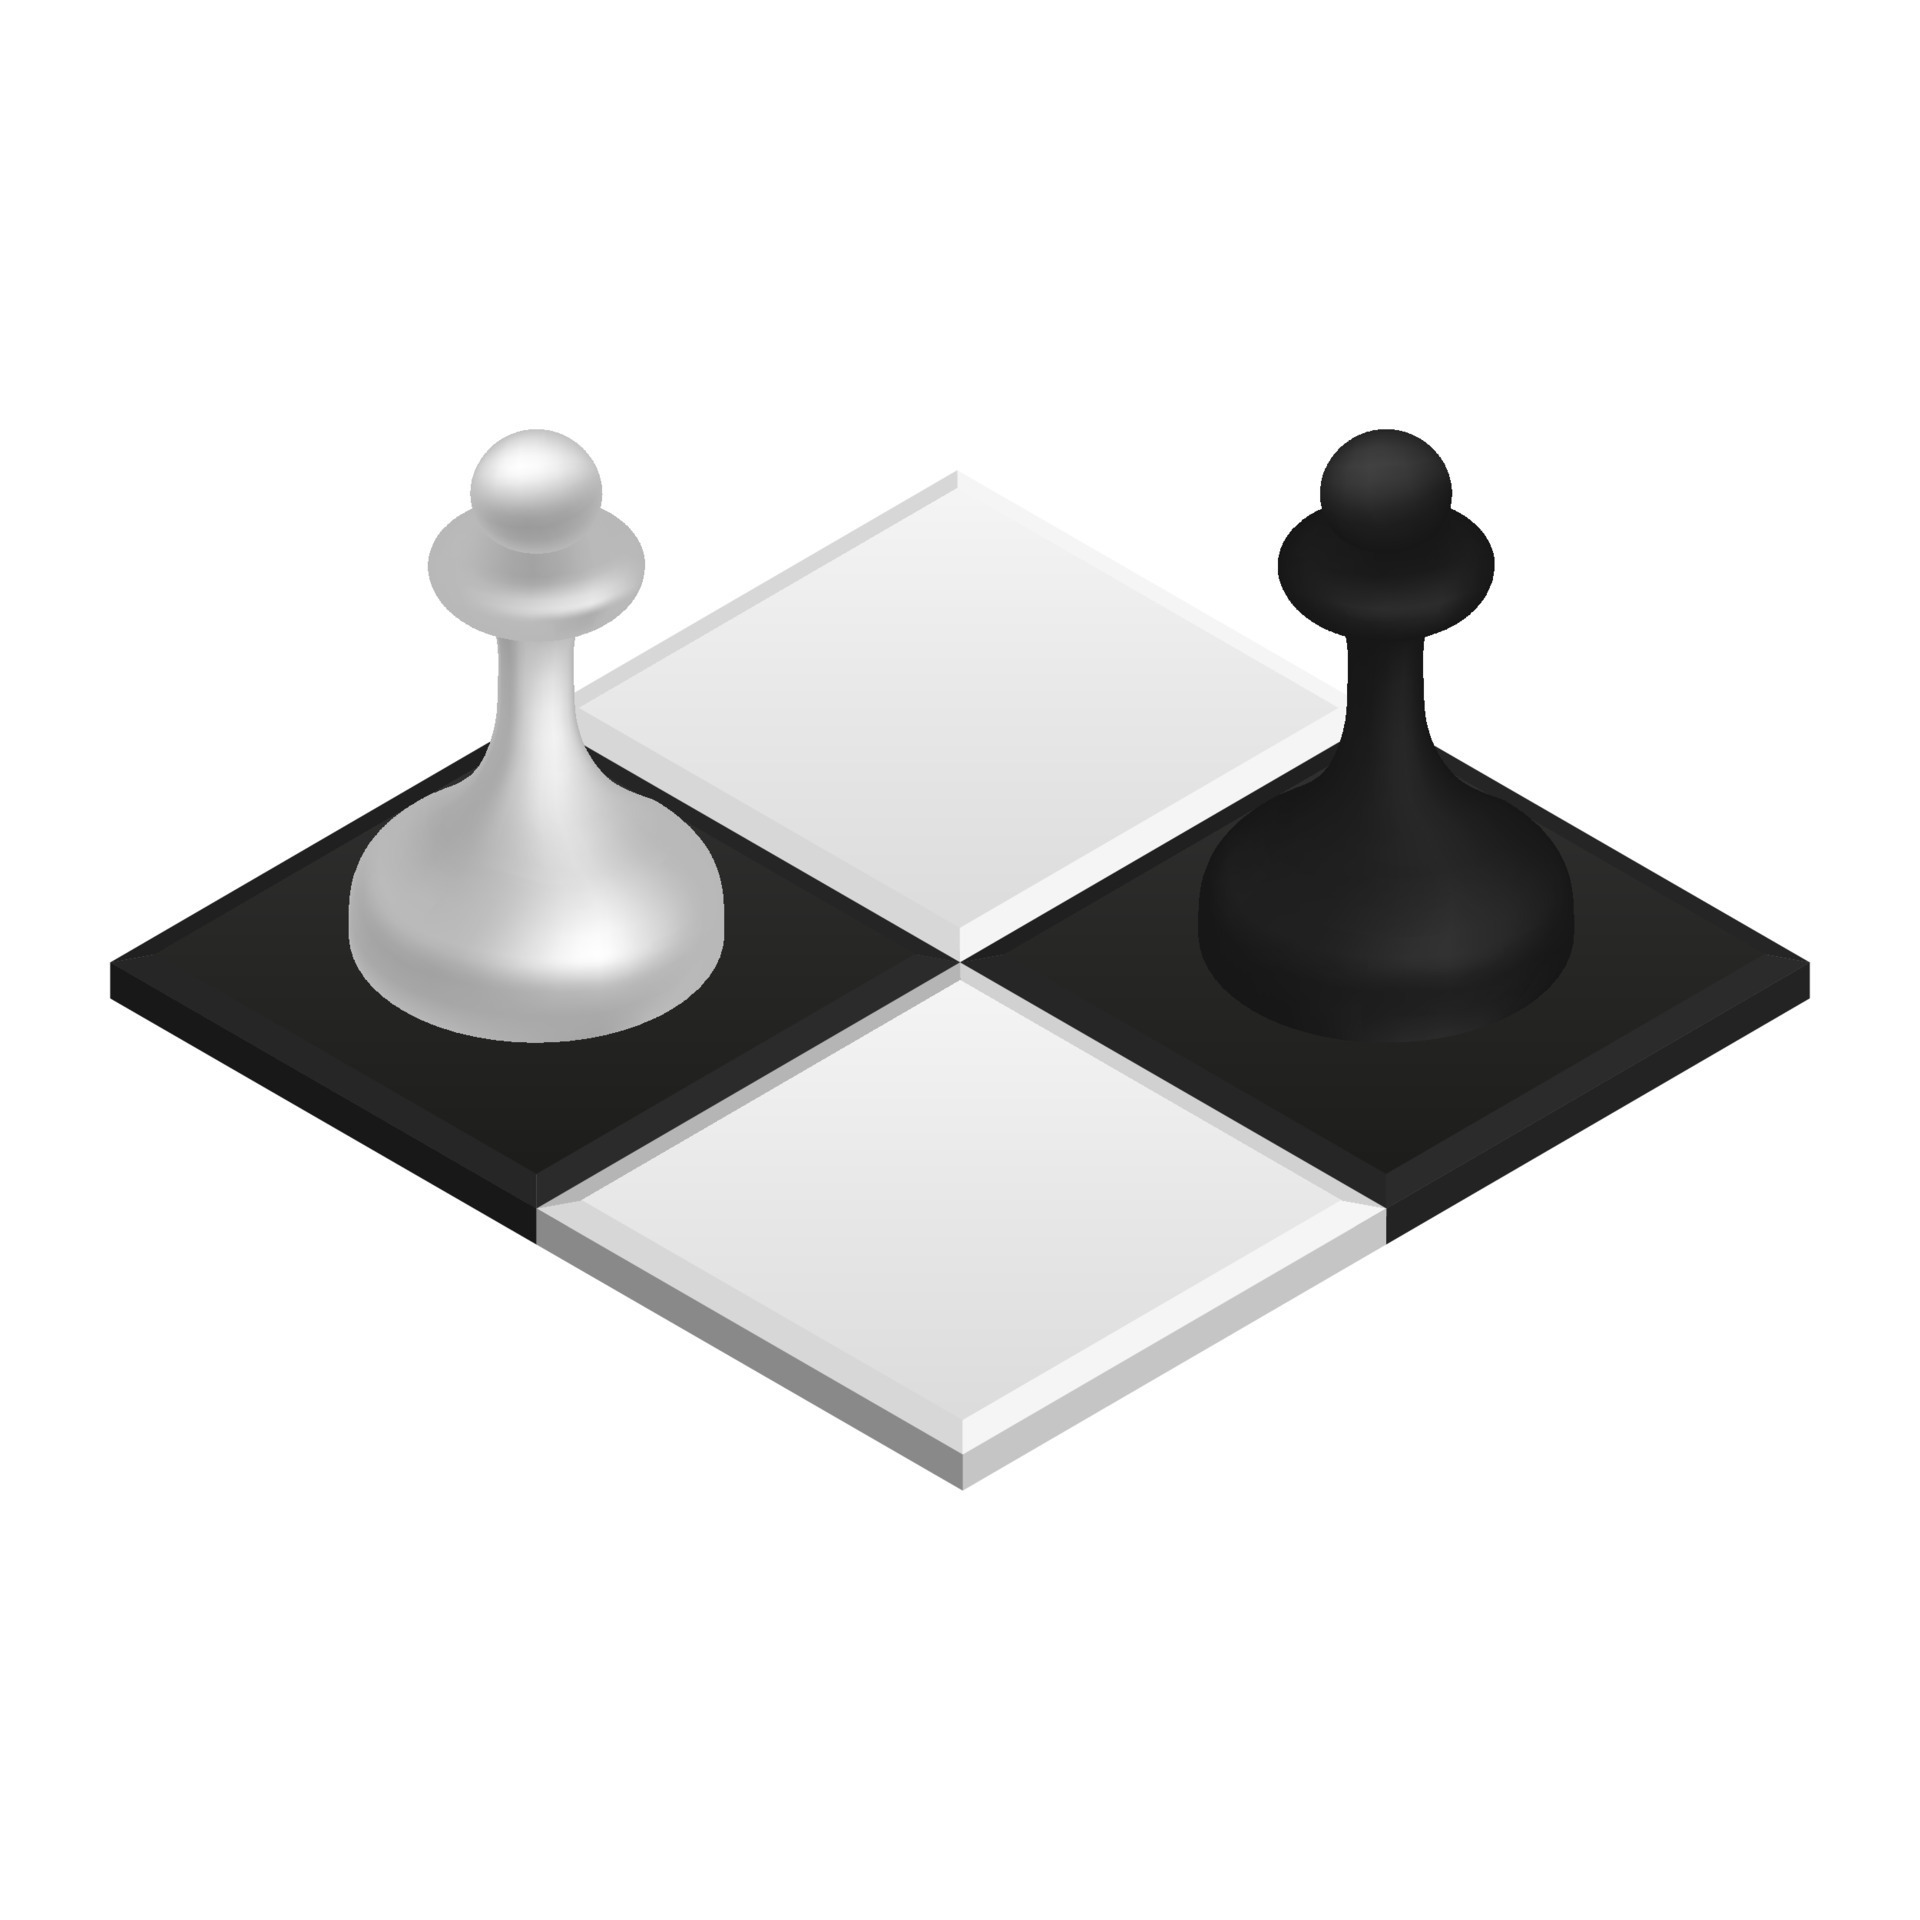 Uma posição inicial de xadrez antes de lutar contra o conceito